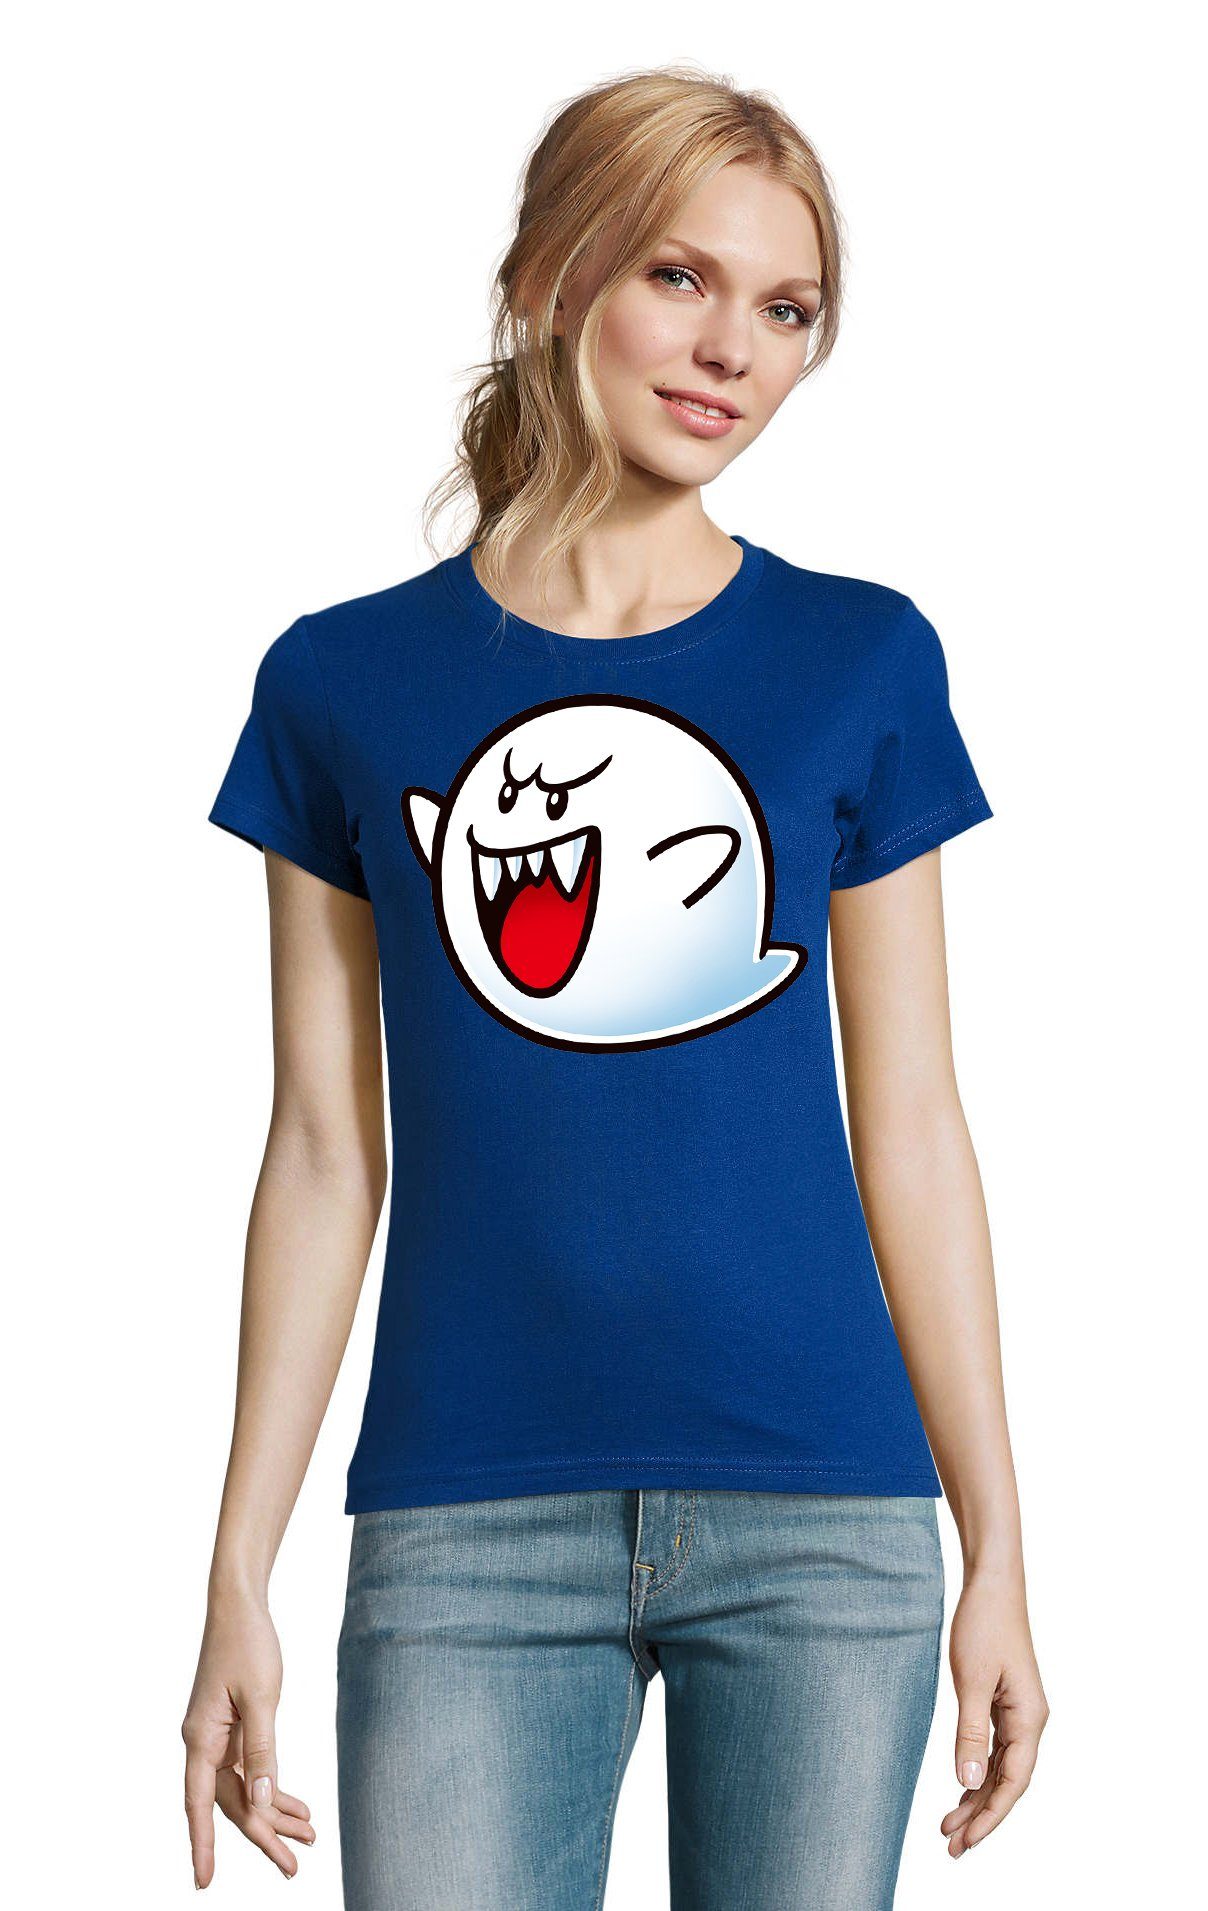 Blondie & Gespenst Konsole Mario Geist Nintendo Boo Blau T-Shirt Damen Super Brownie